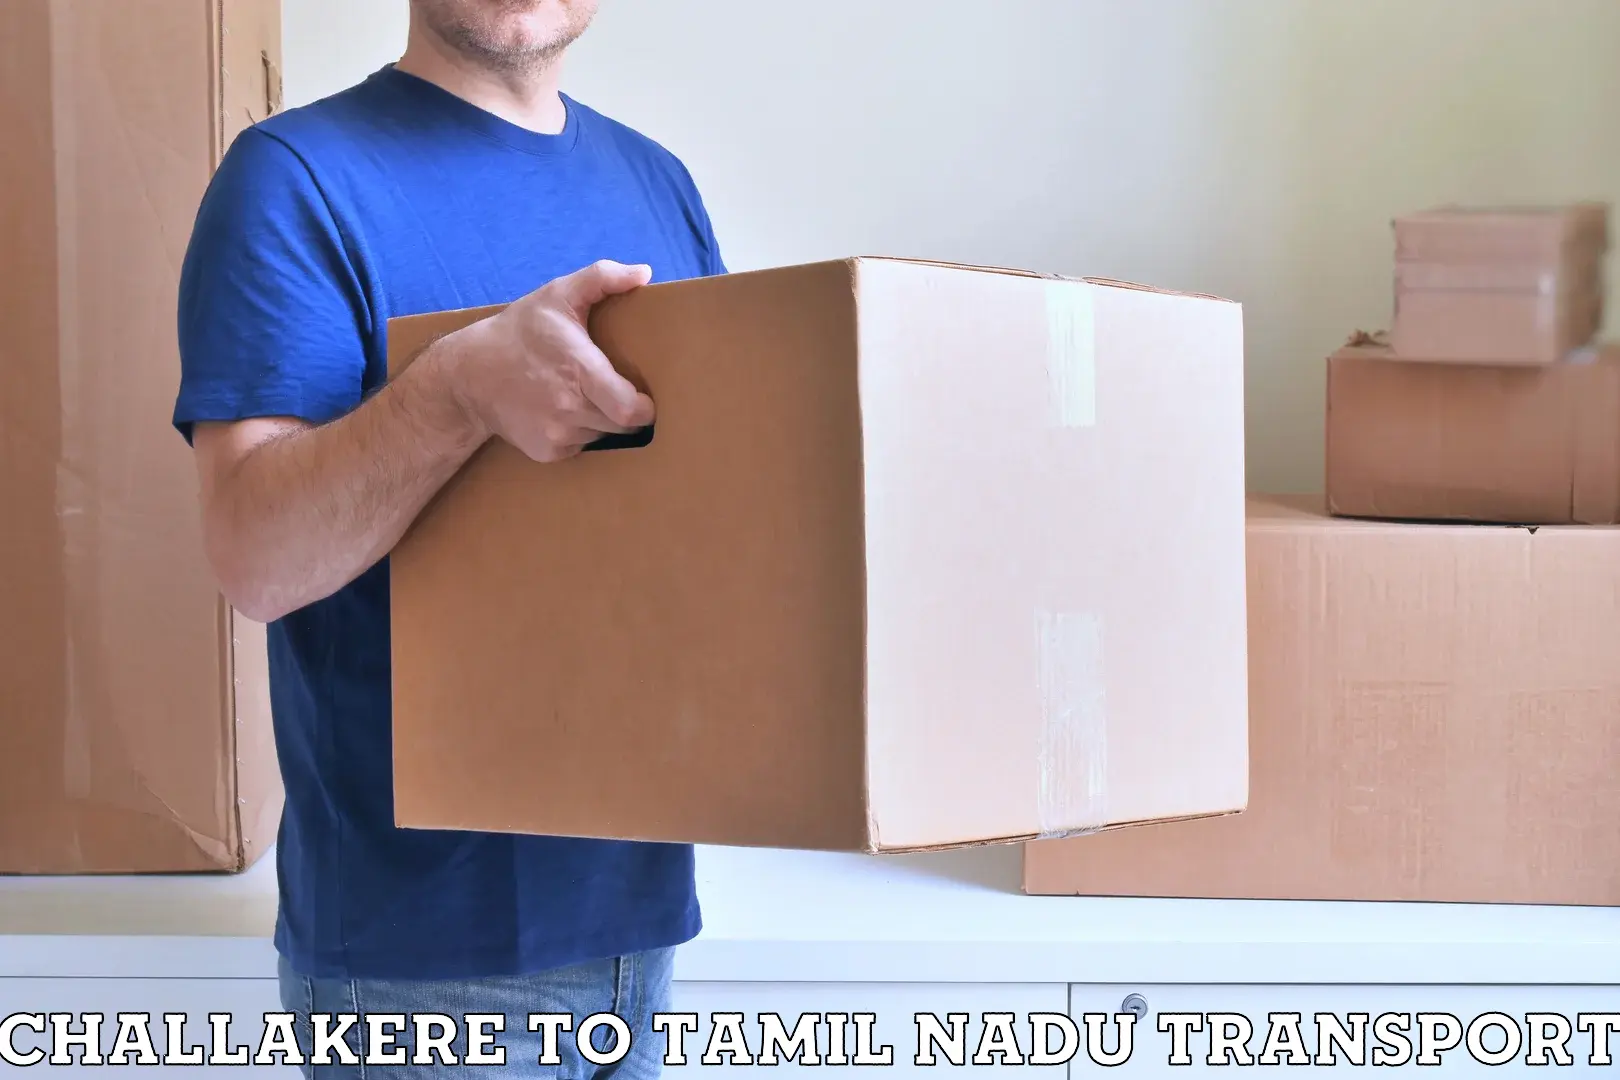 Two wheeler parcel service Challakere to Denkanikottai